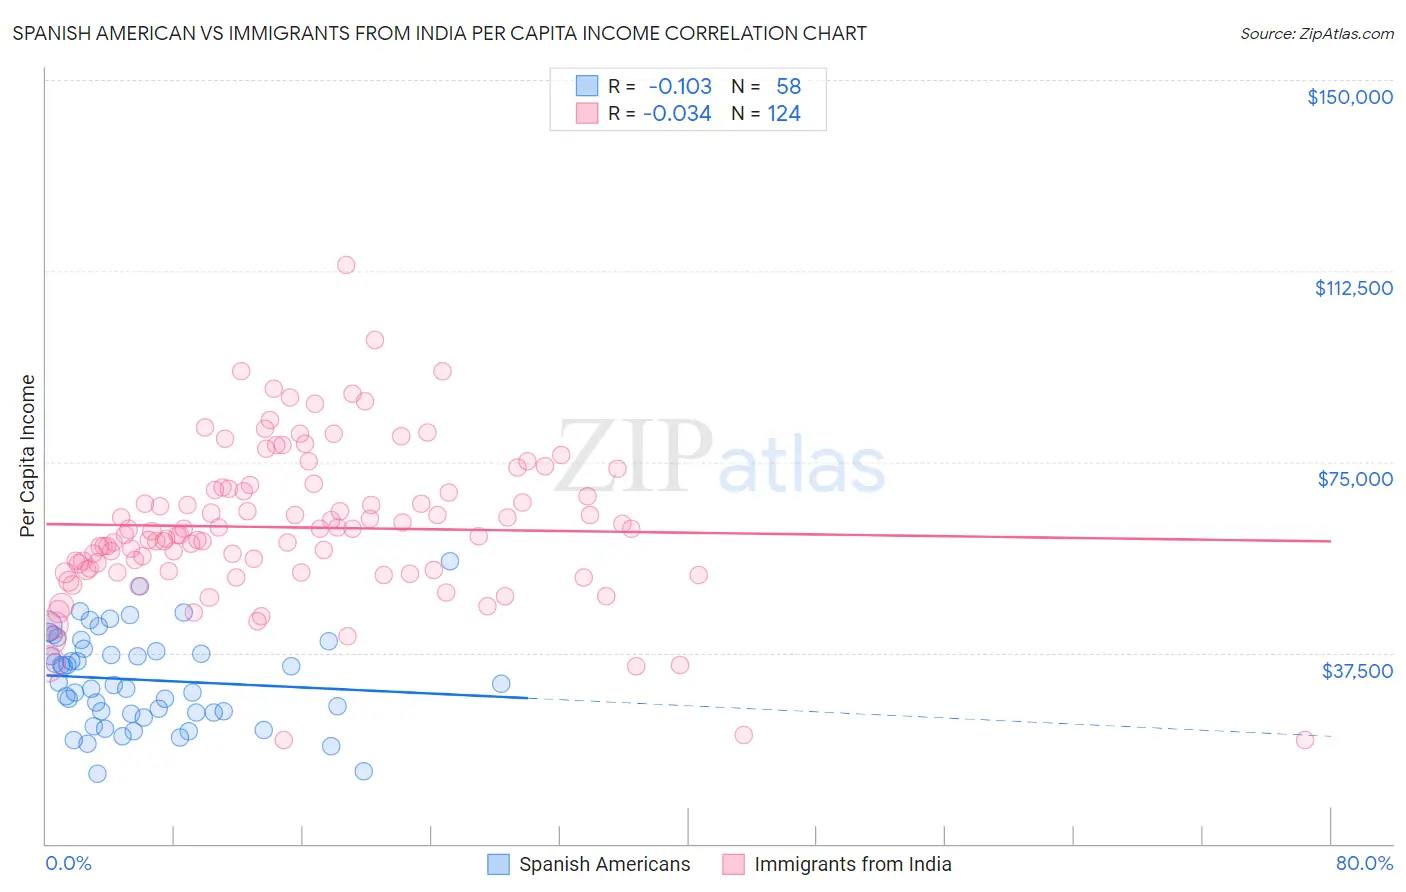 Spanish American vs Immigrants from India Per Capita Income